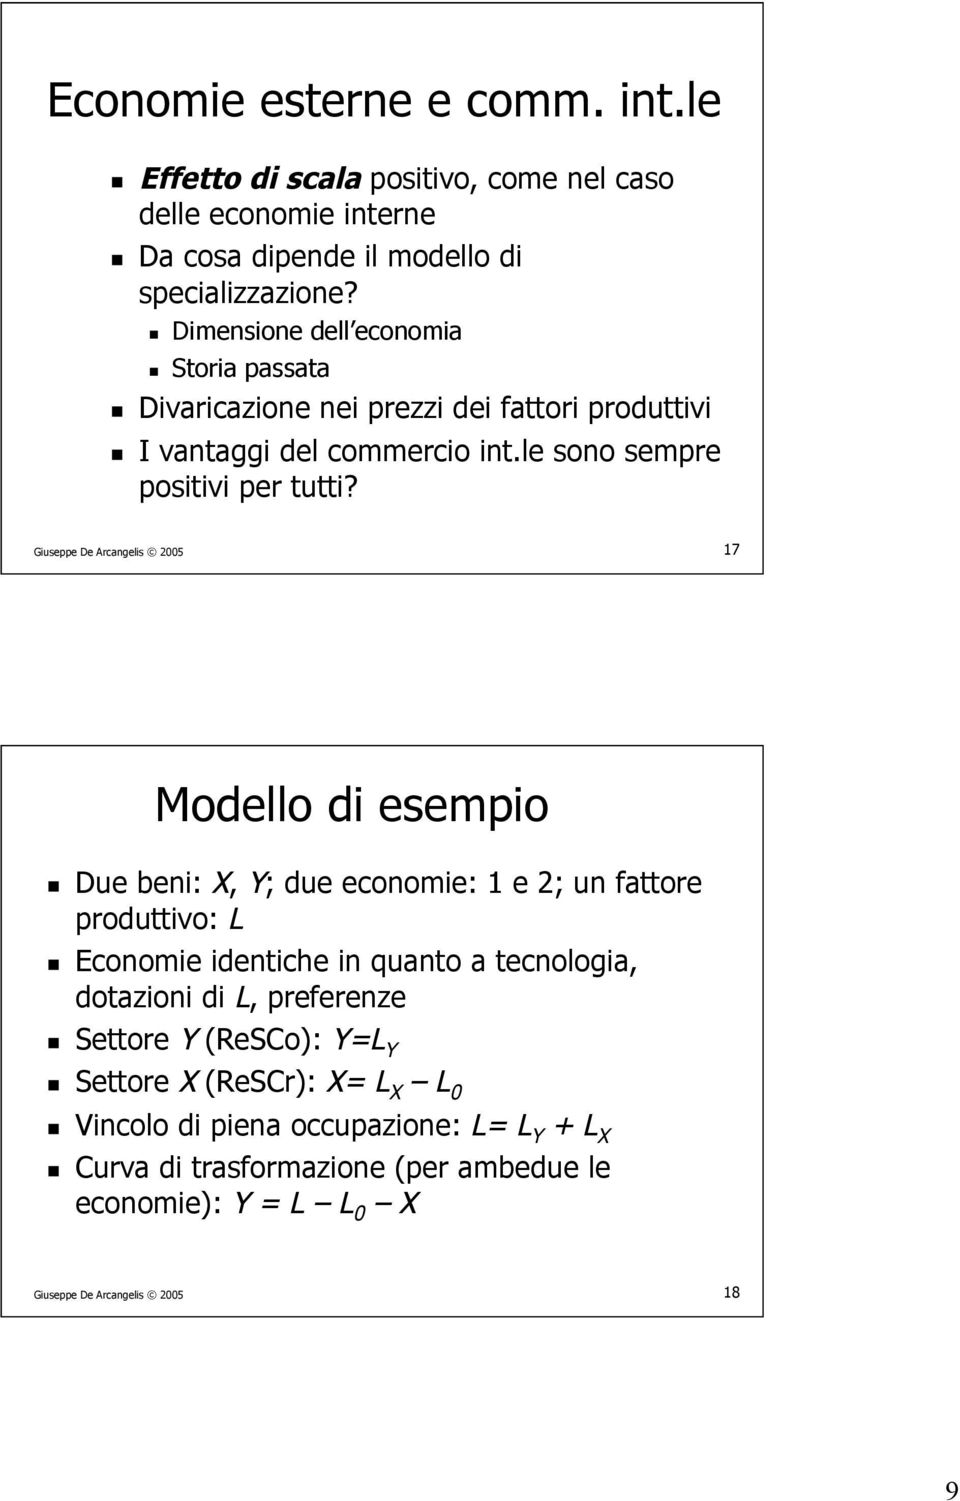 17 Modello di esempio Due beni: X, Y; due economie: 1 e 2; un fattore produttivo: L Economie identiche in quanto a tecnologia, dotazioni di L, preferenze